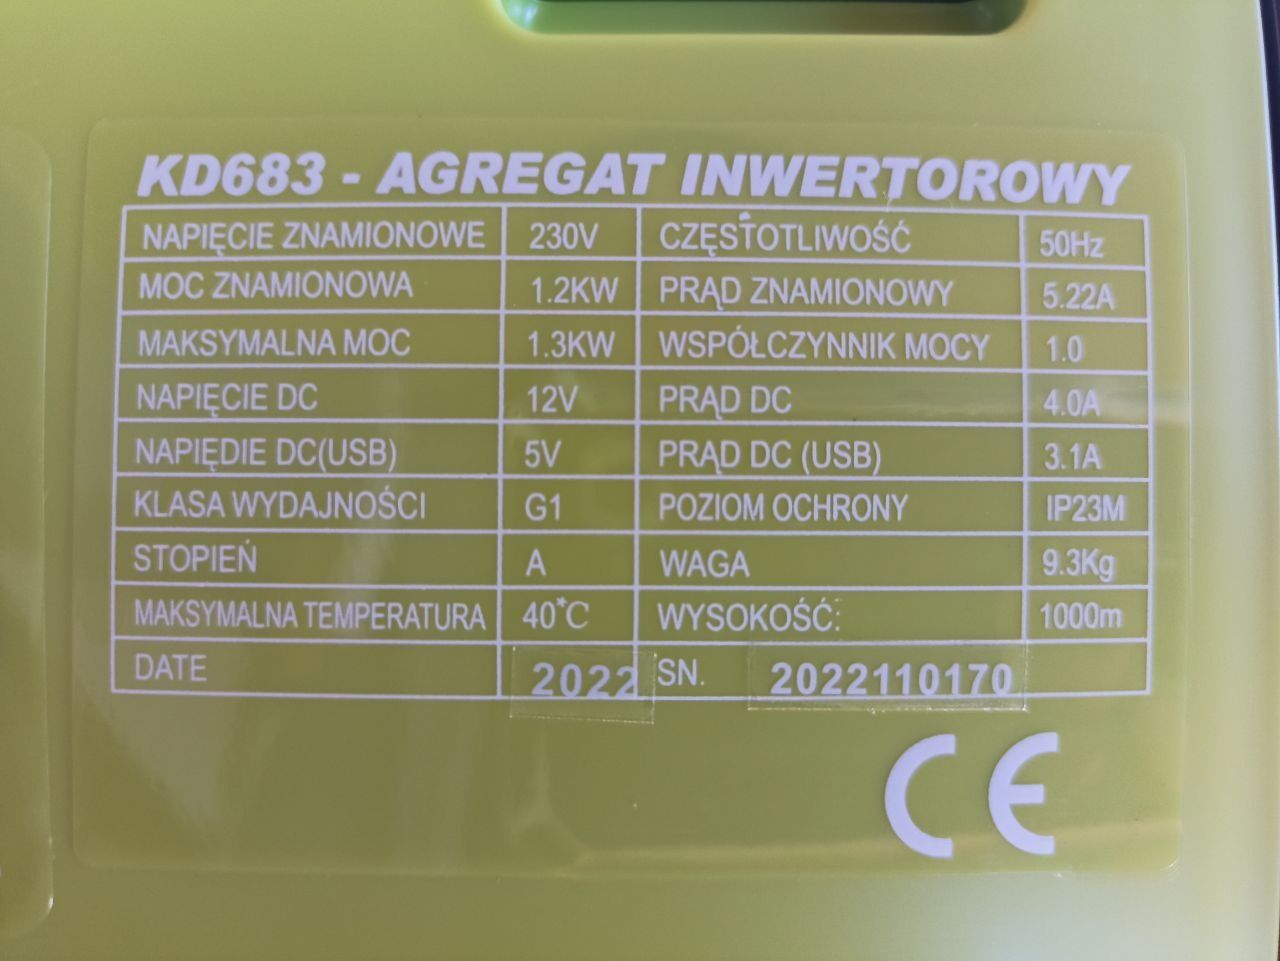 Генератор инверторный Kraft&Dele KD683 - 1,3kW